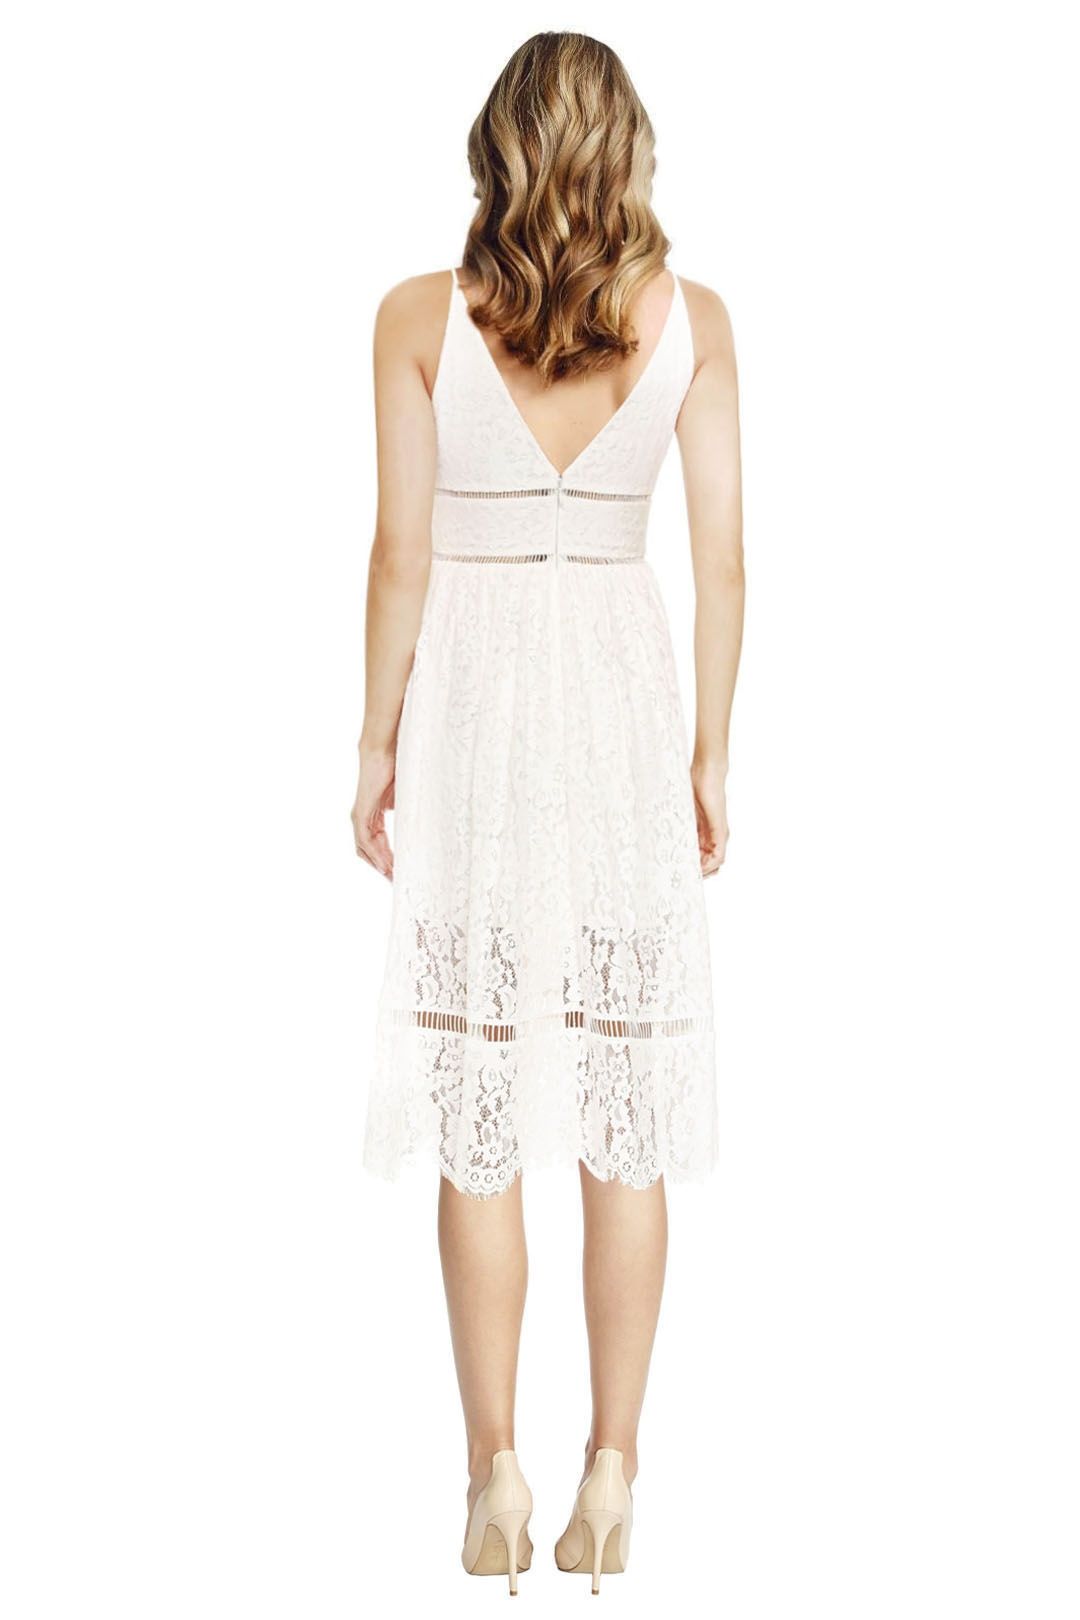 Cynthia Rowley – Lace Midi Dress - White - Back